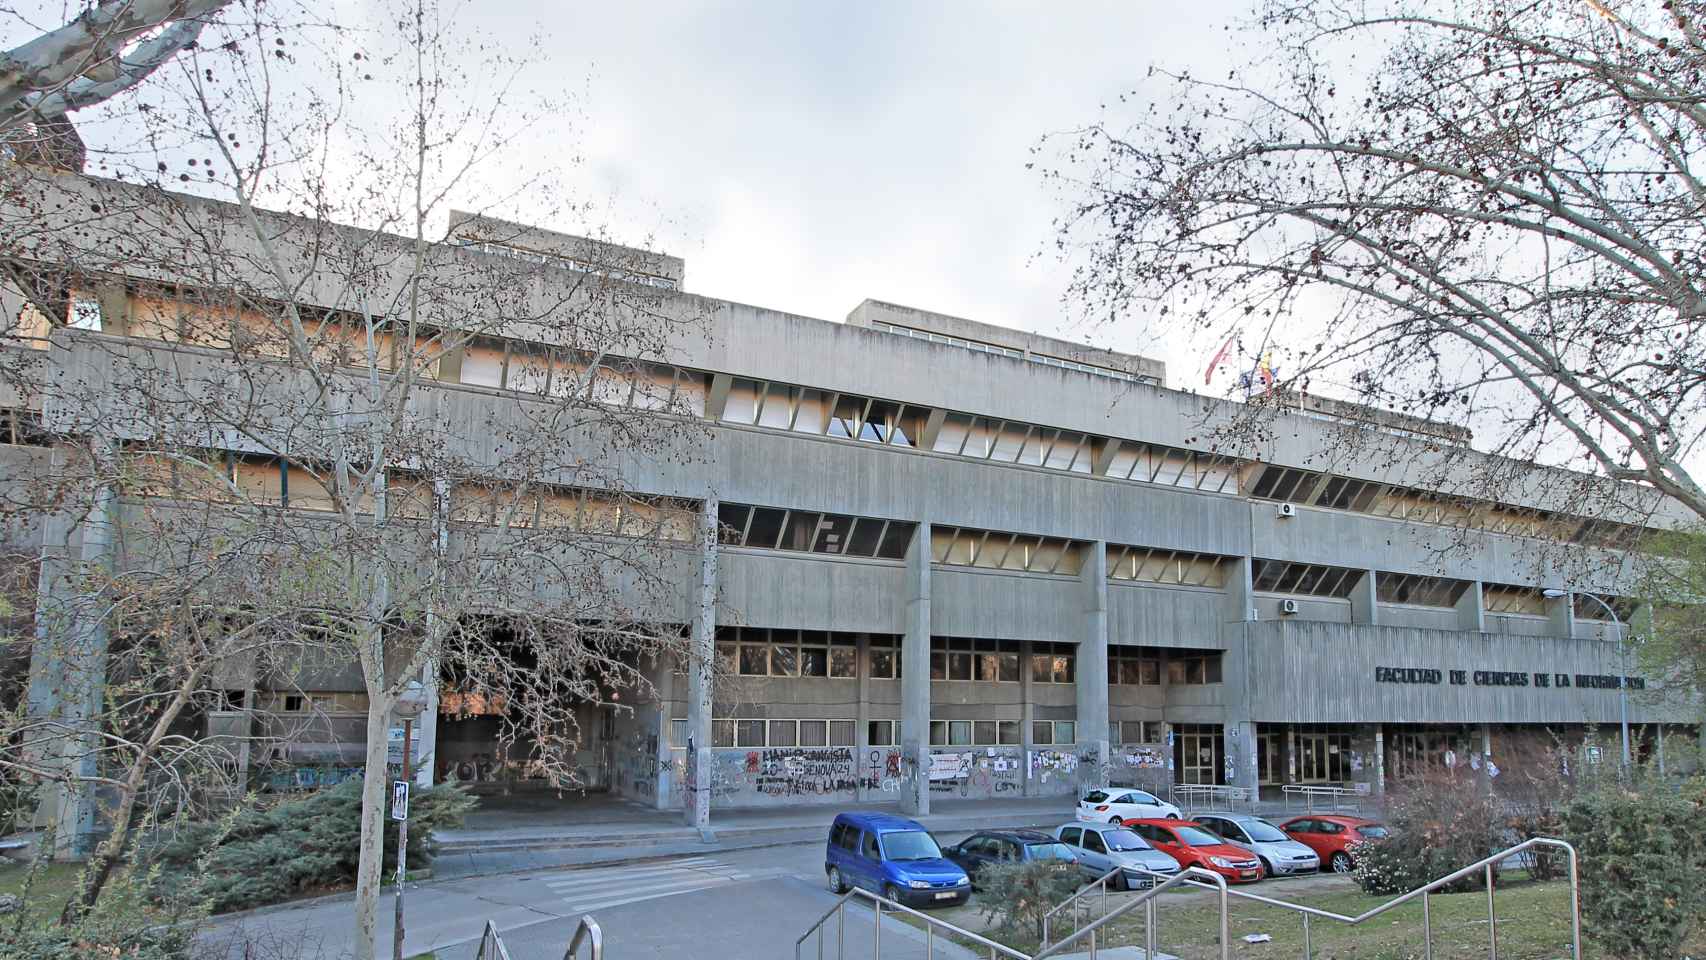 Facultad de Ciencias de la Información, Universidad Complutense de Madrid (UCM).